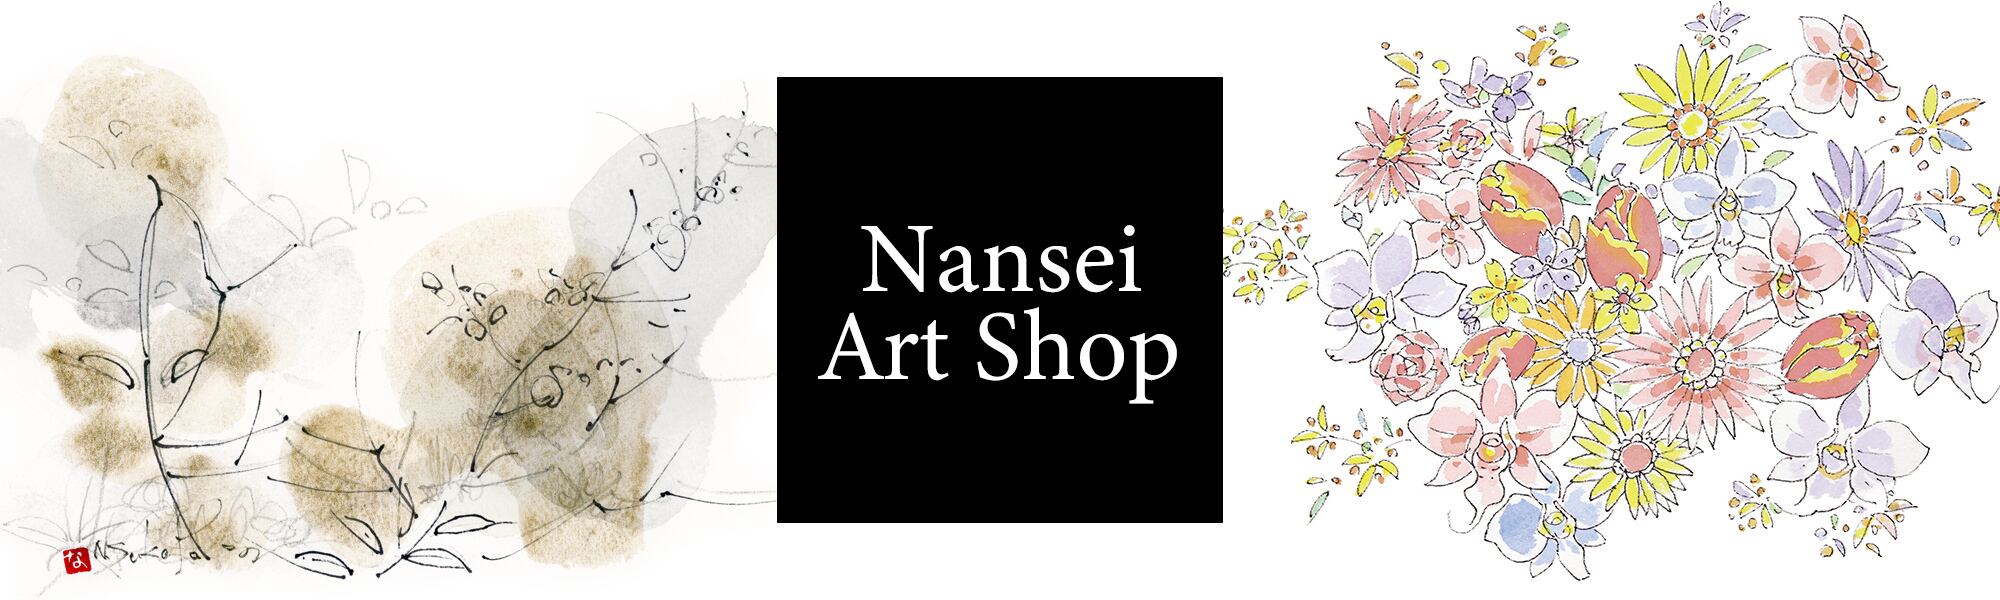 Nansei Art Shop